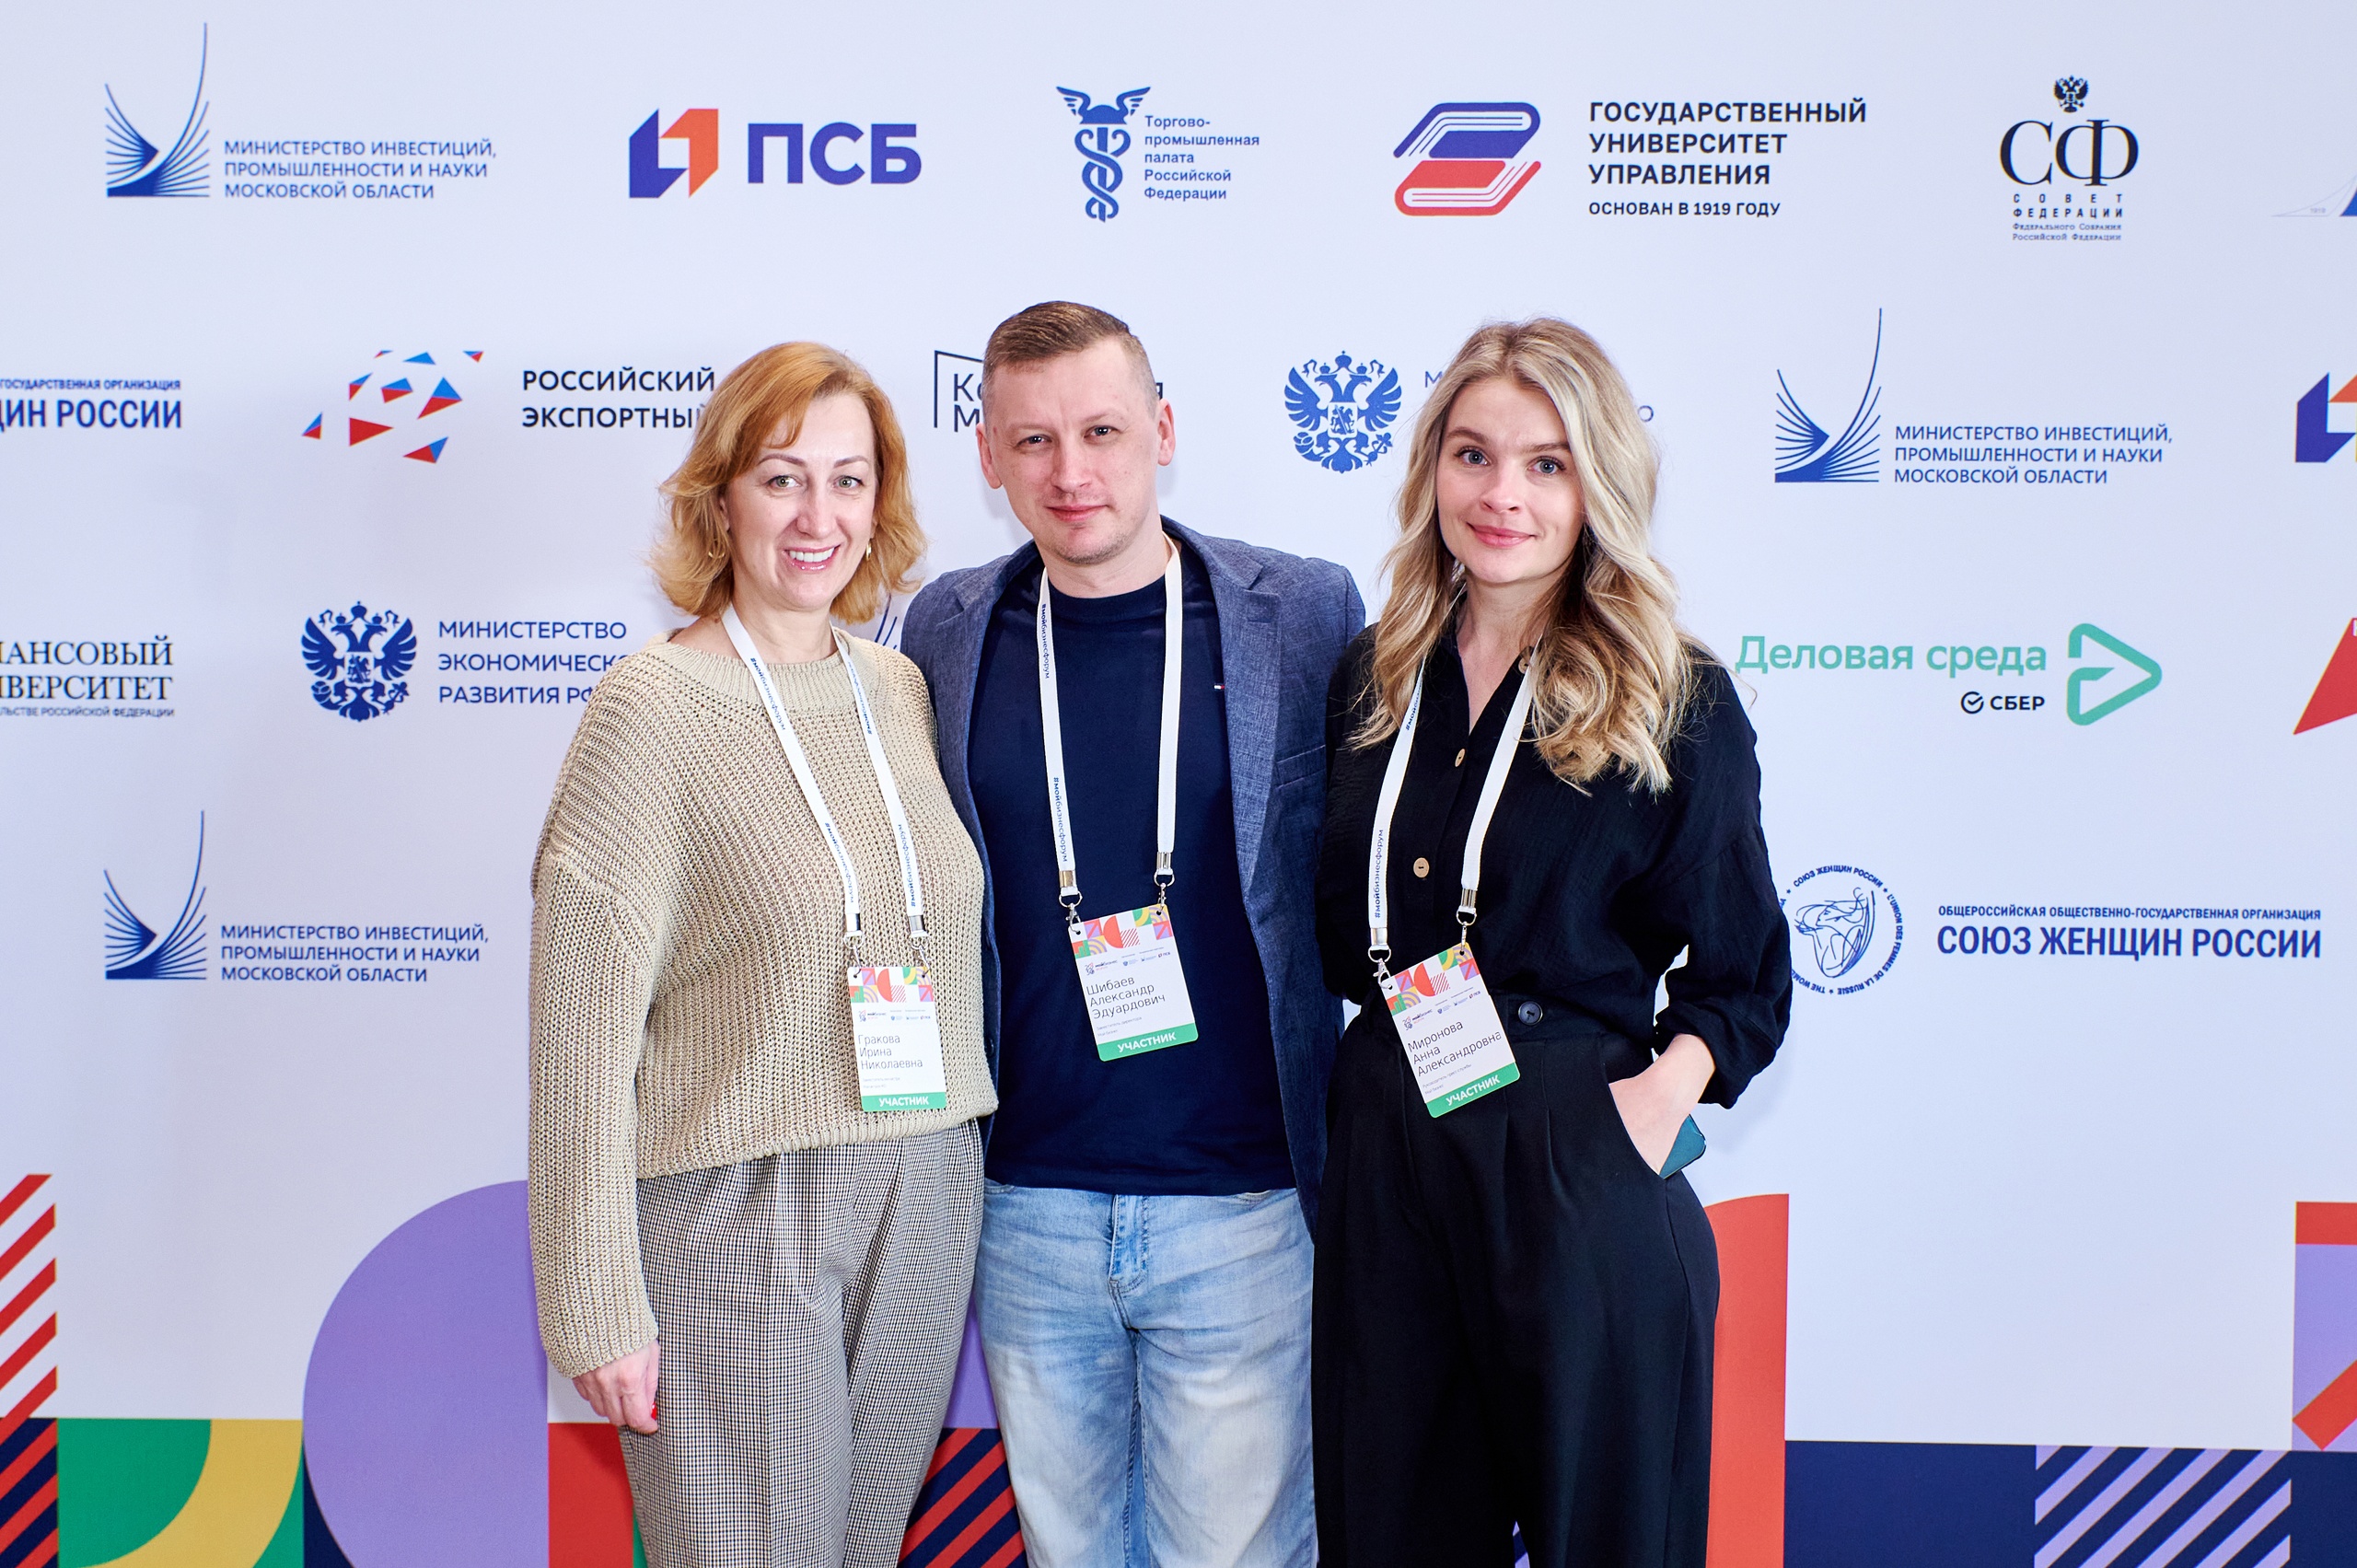 Всероссийский форум «Мой бизнес» прошёл в Подмосковье 6–7 апреля